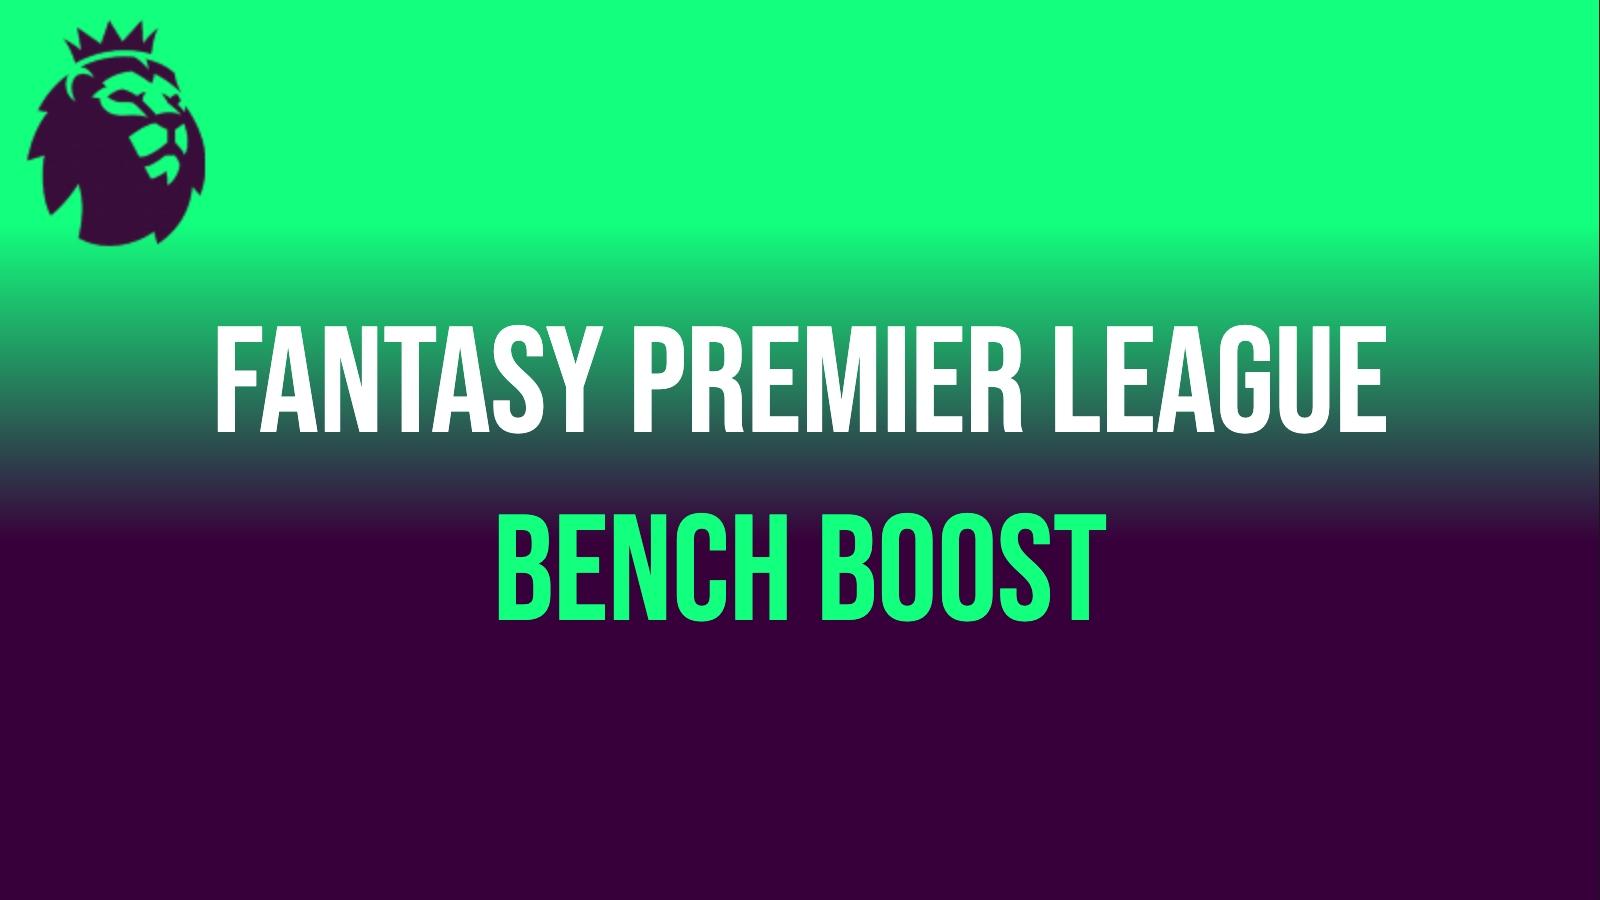 Fantasy premier League bench boost with Premier League lion logo in top left corner